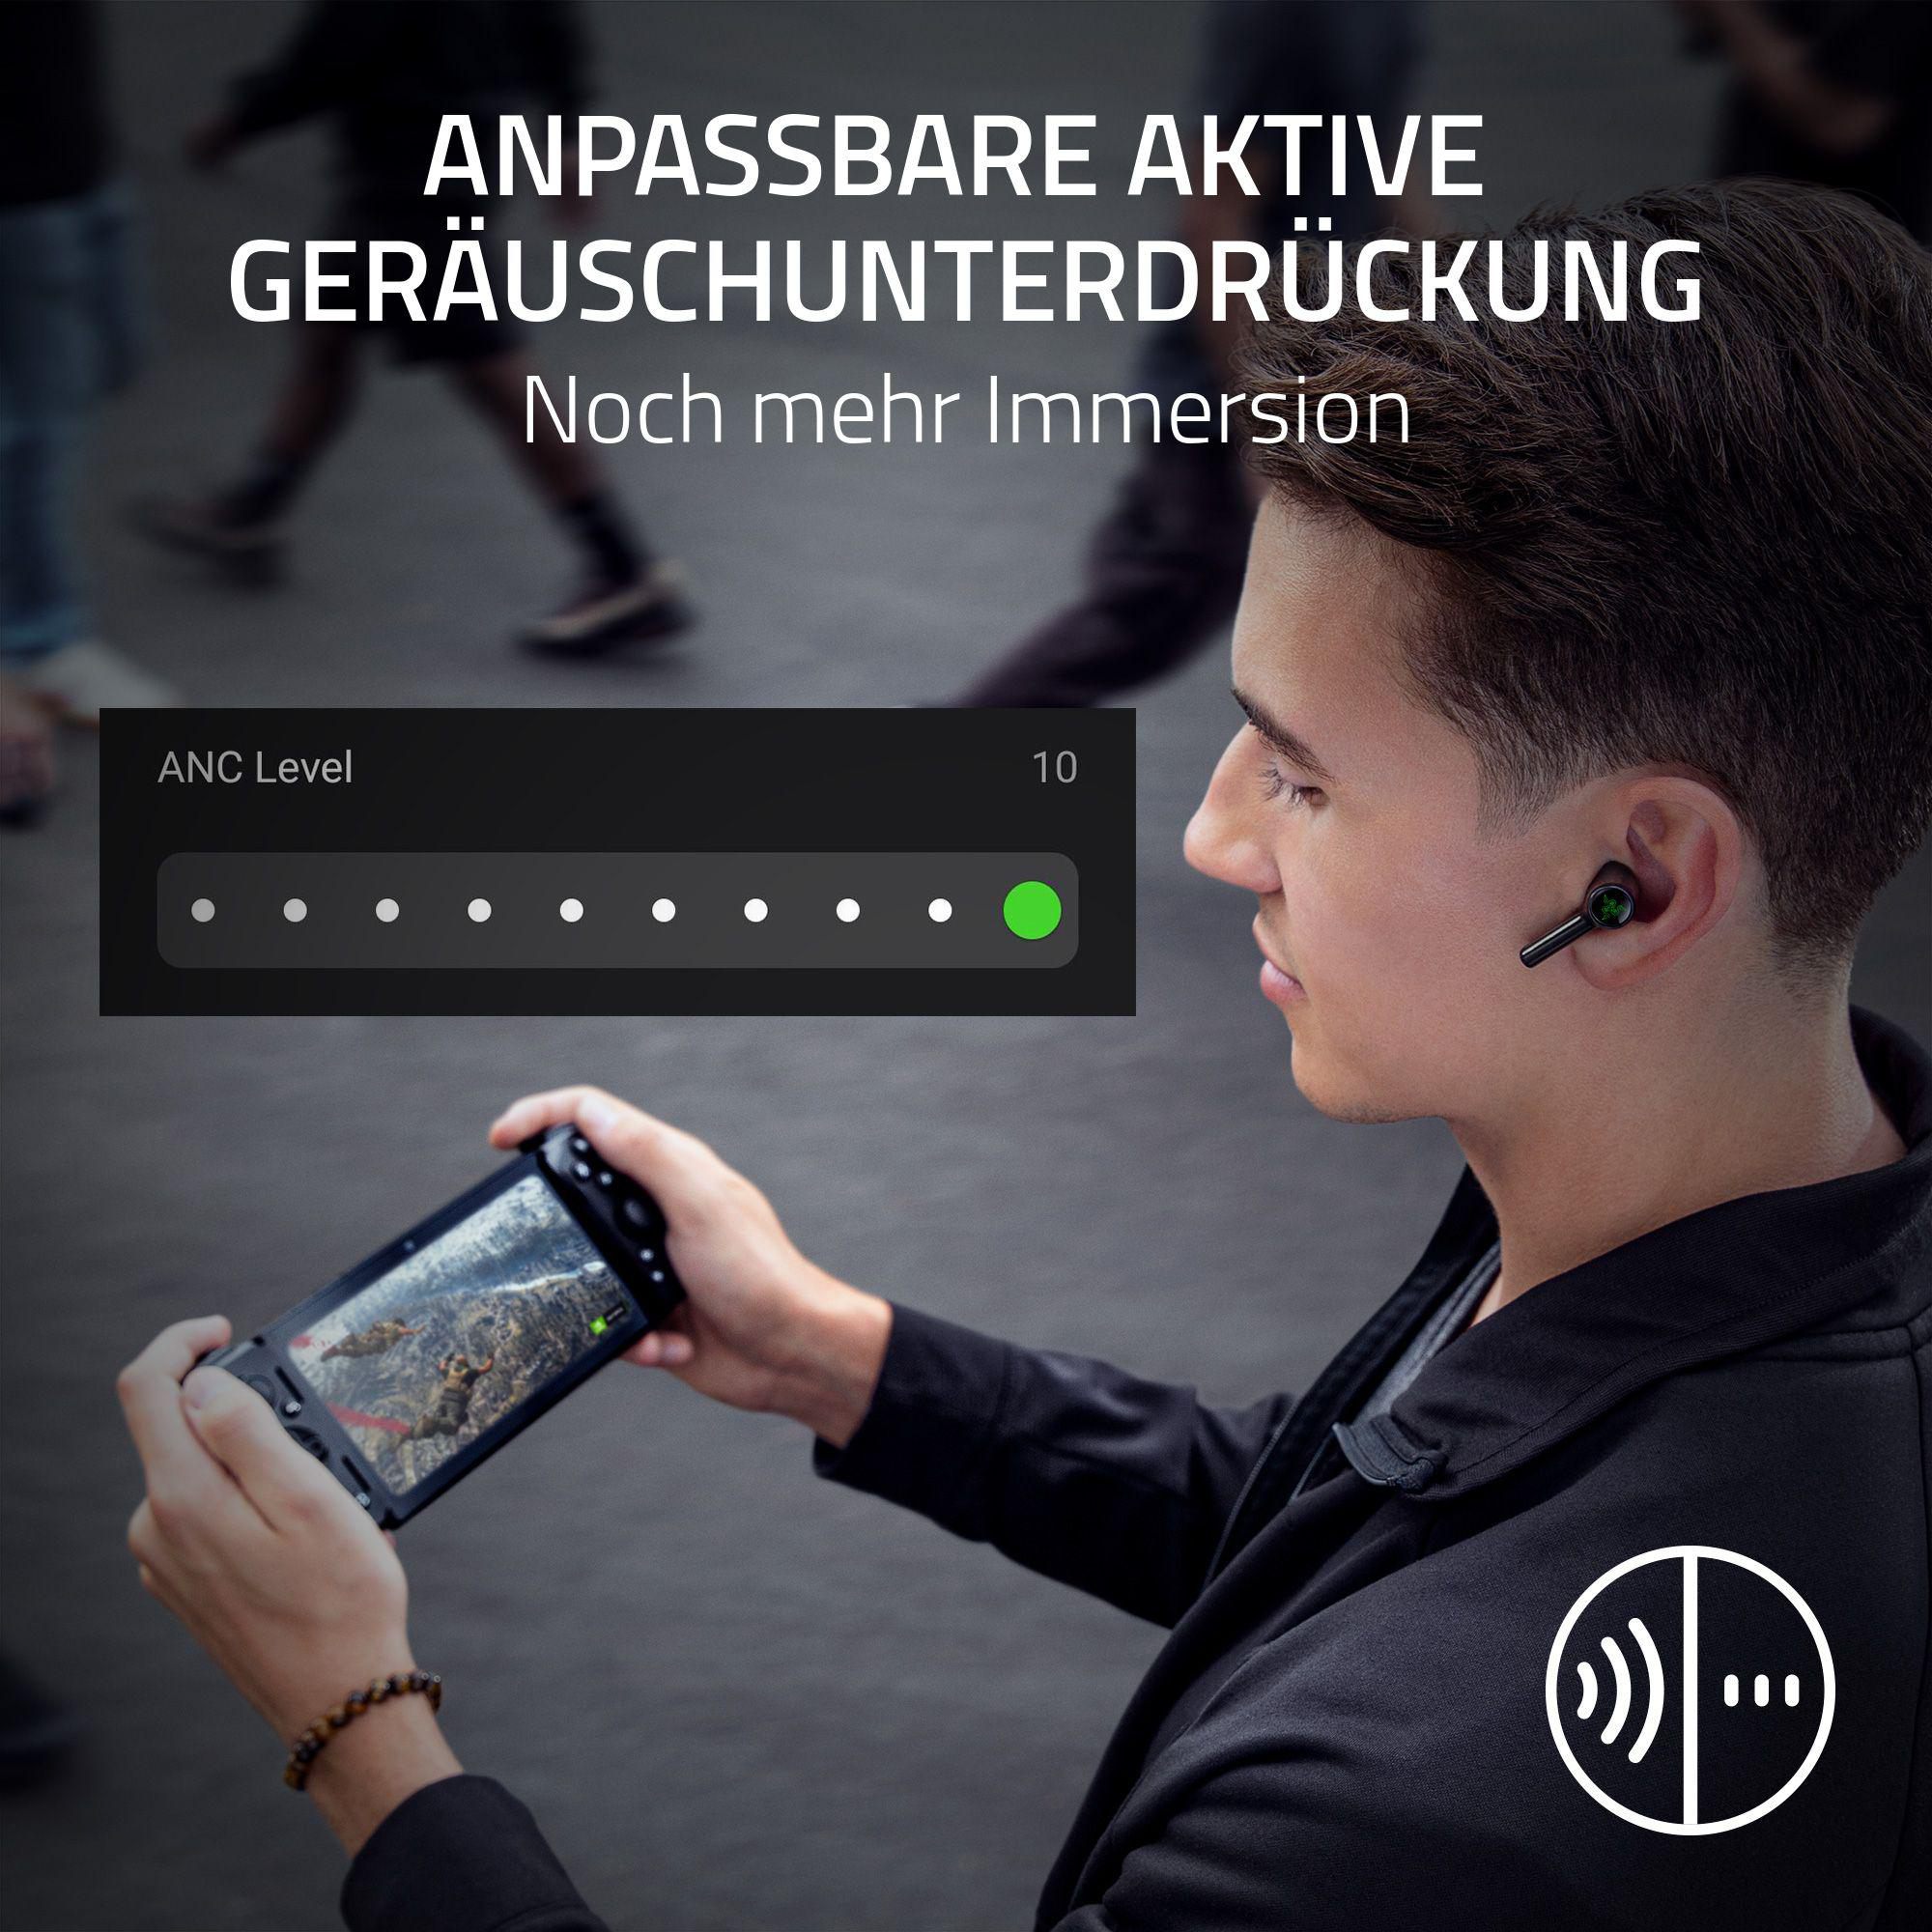 True In-ear Kopfhörer RAZER Pro Schwarz Hammerhead Bluetooth HyperSpeed Wireless,